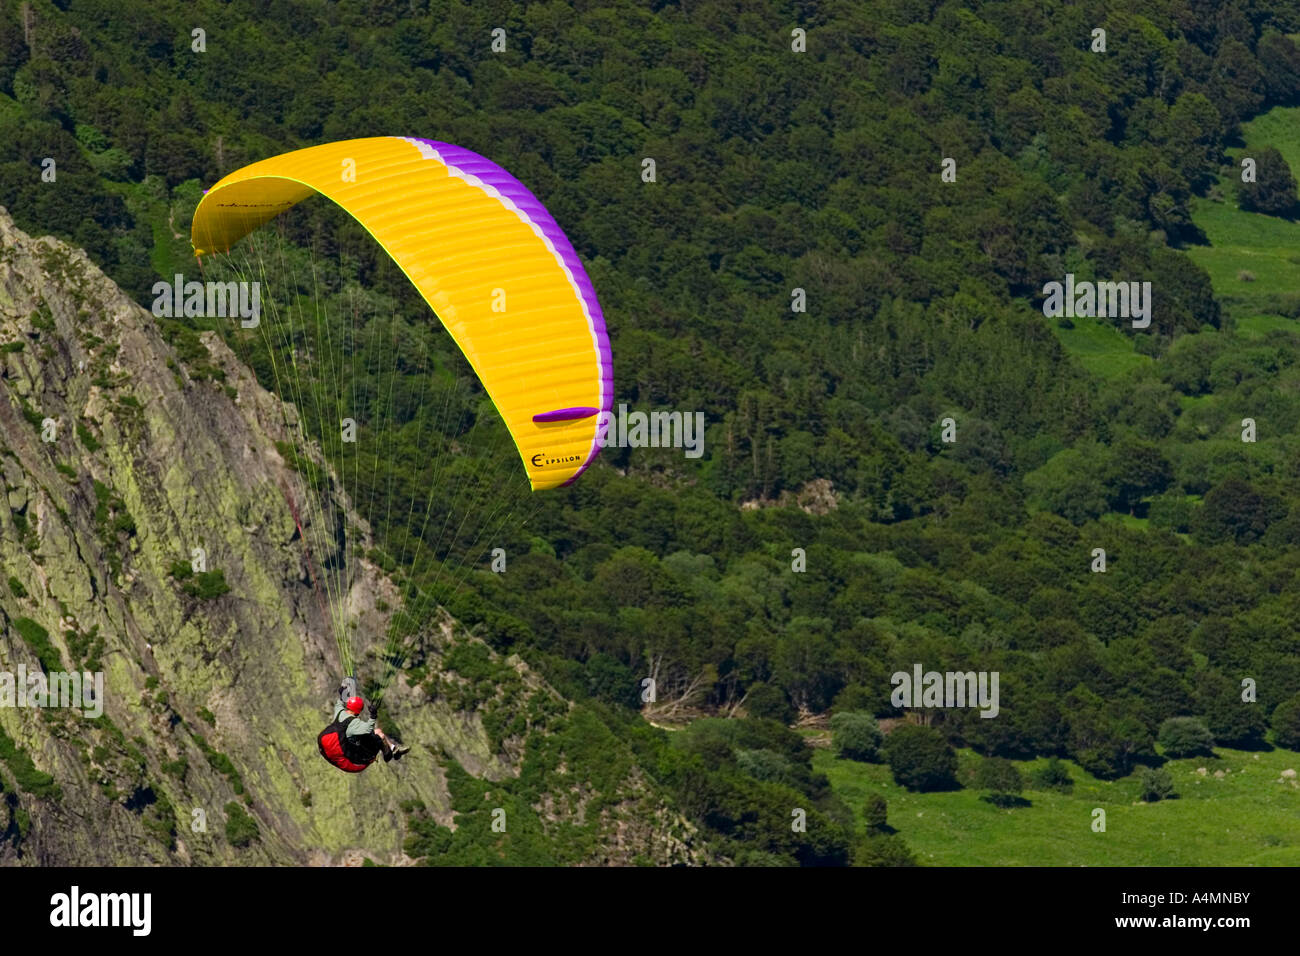 A paraglider over the Sancy Massif (Puy de Dôme - France). Parapentiste en vol dans le massif du Sancy (Puy de Dôme - France). Stock Photo